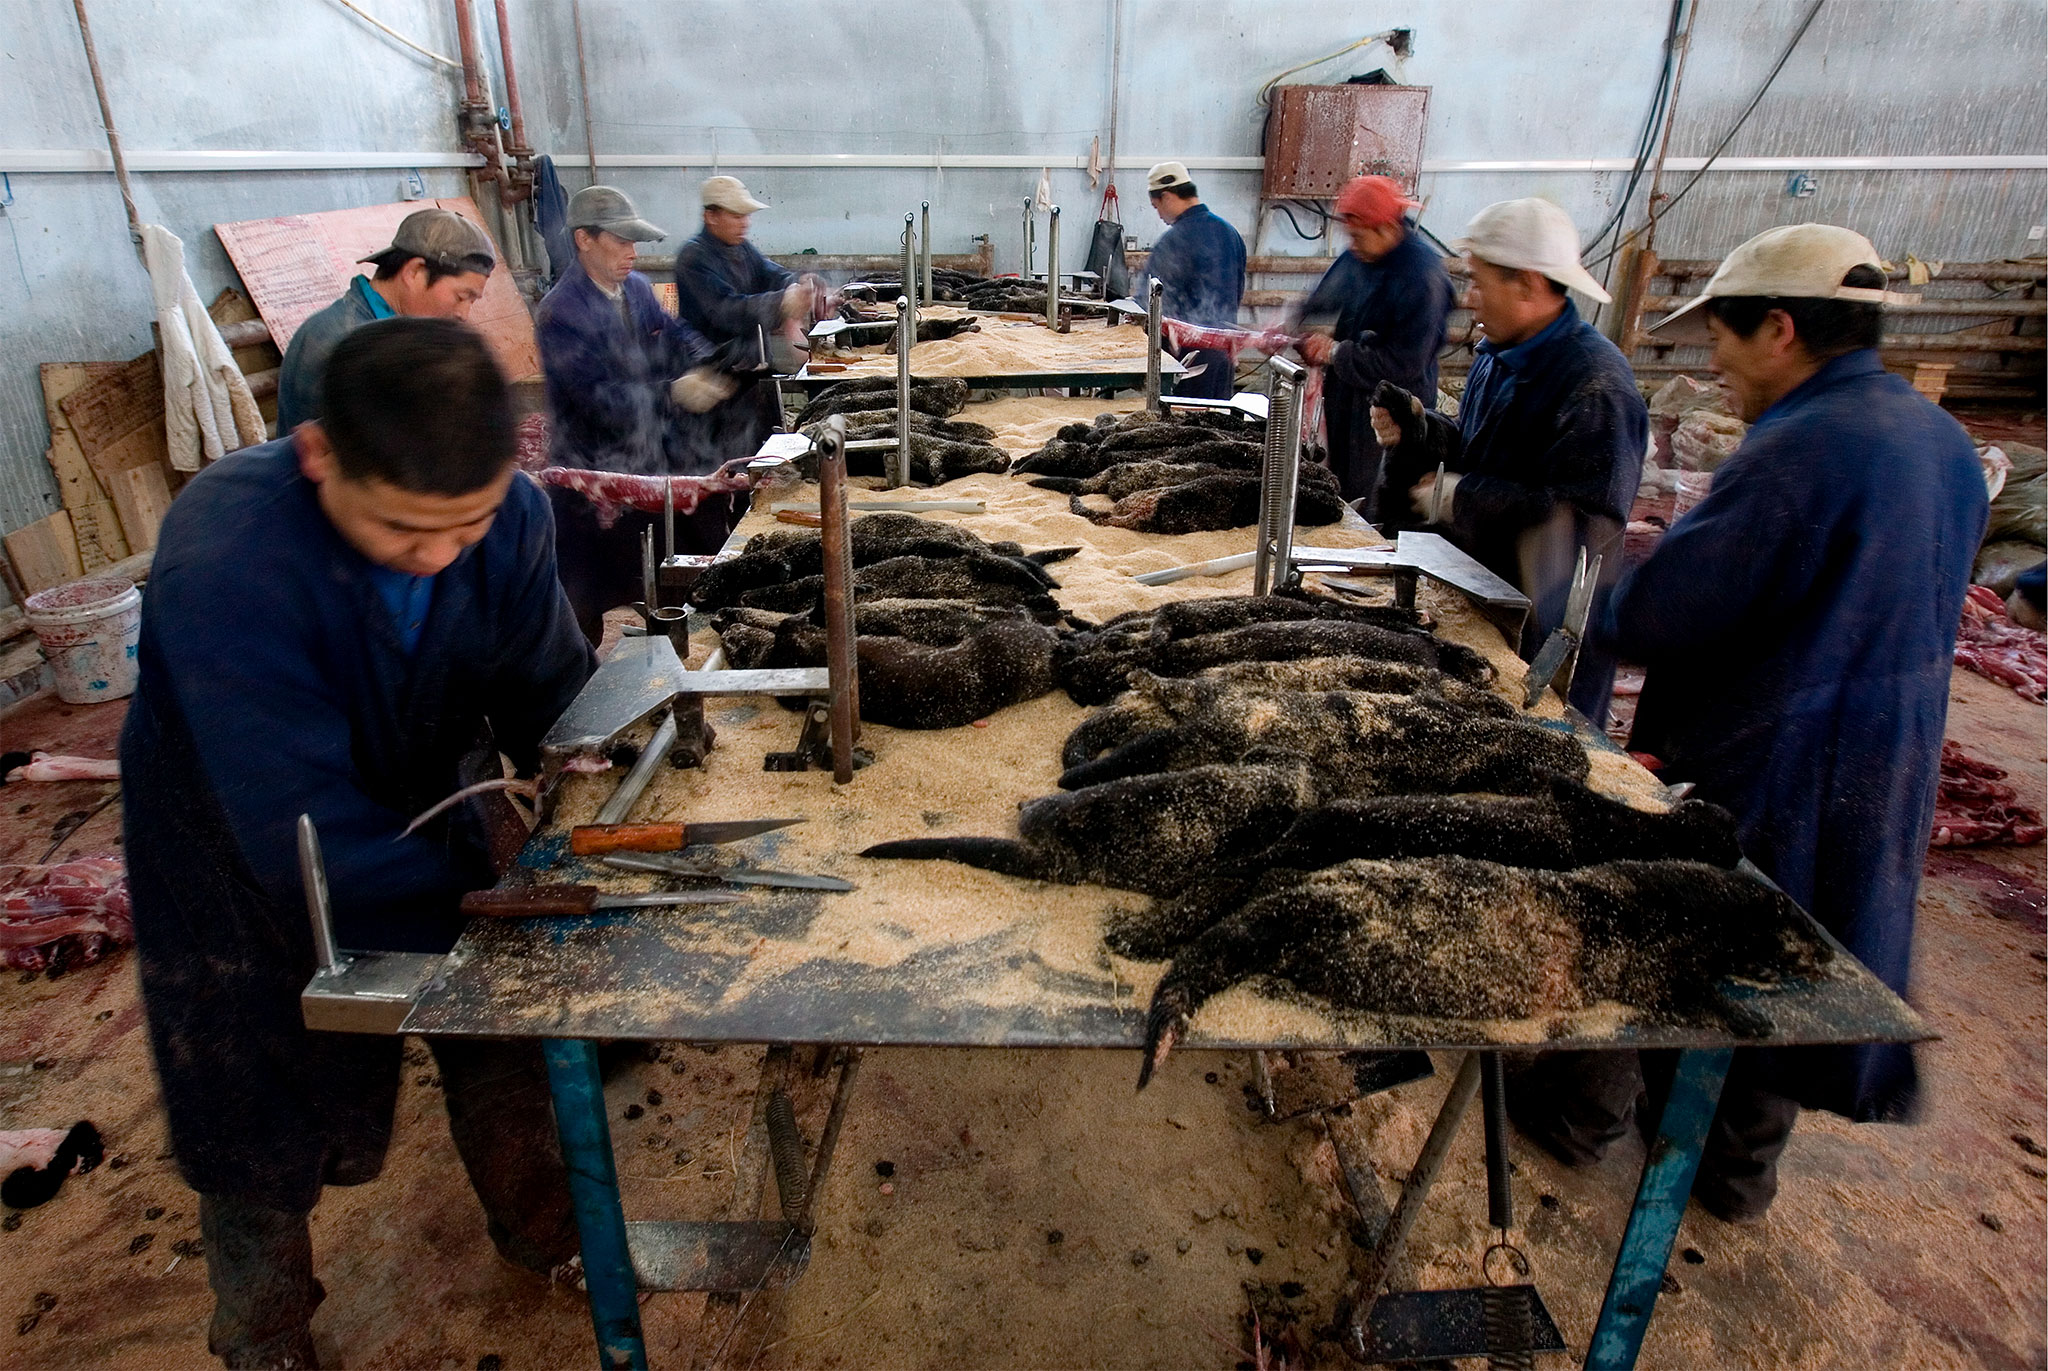 Granjas chinas de piel descubiertas en toda su crueldad